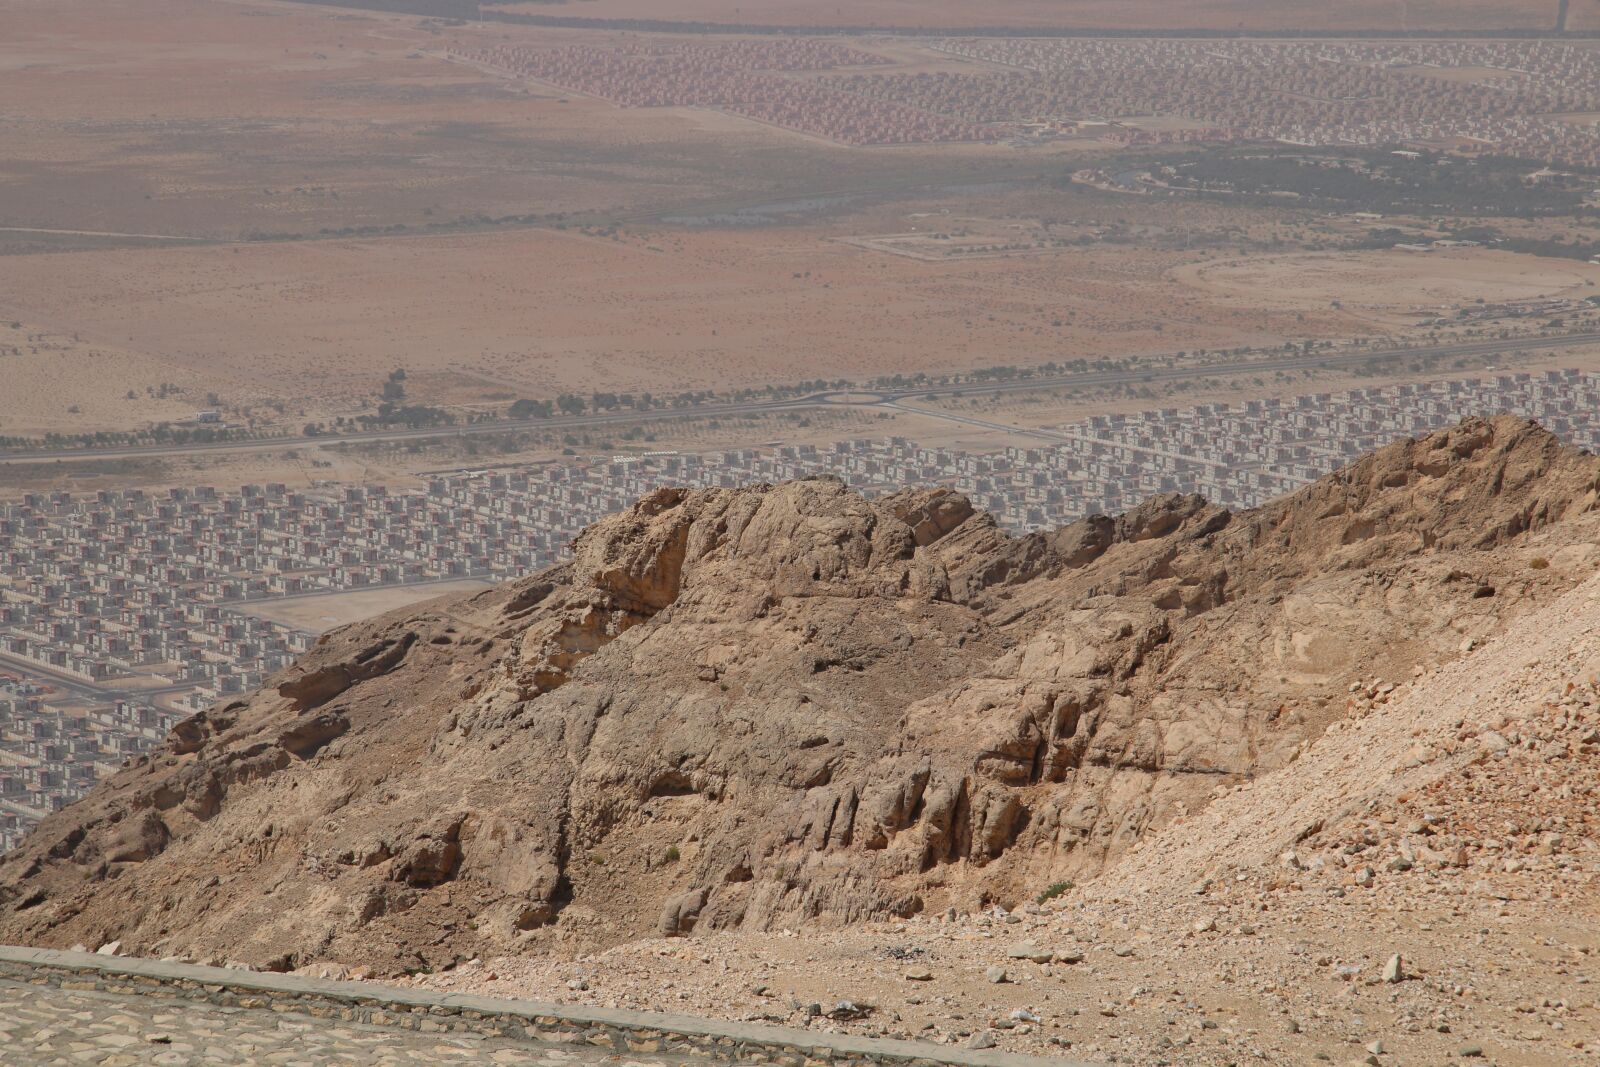 Canon EOS 70D sample photo. "Mountain, desert, rocks" photography